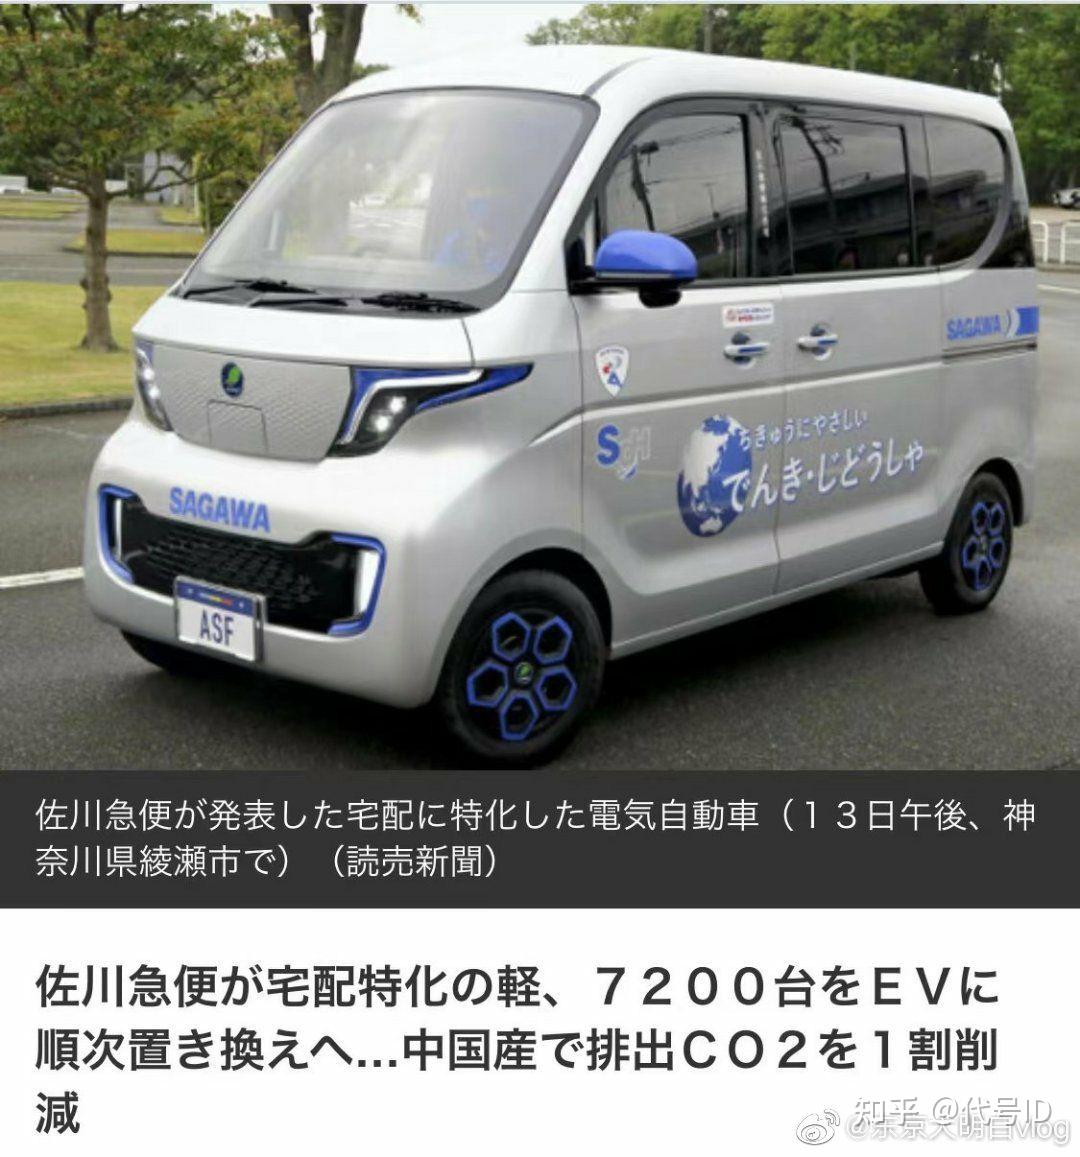 因为五菱mini ev的热销 日本kcar会进入中国么?